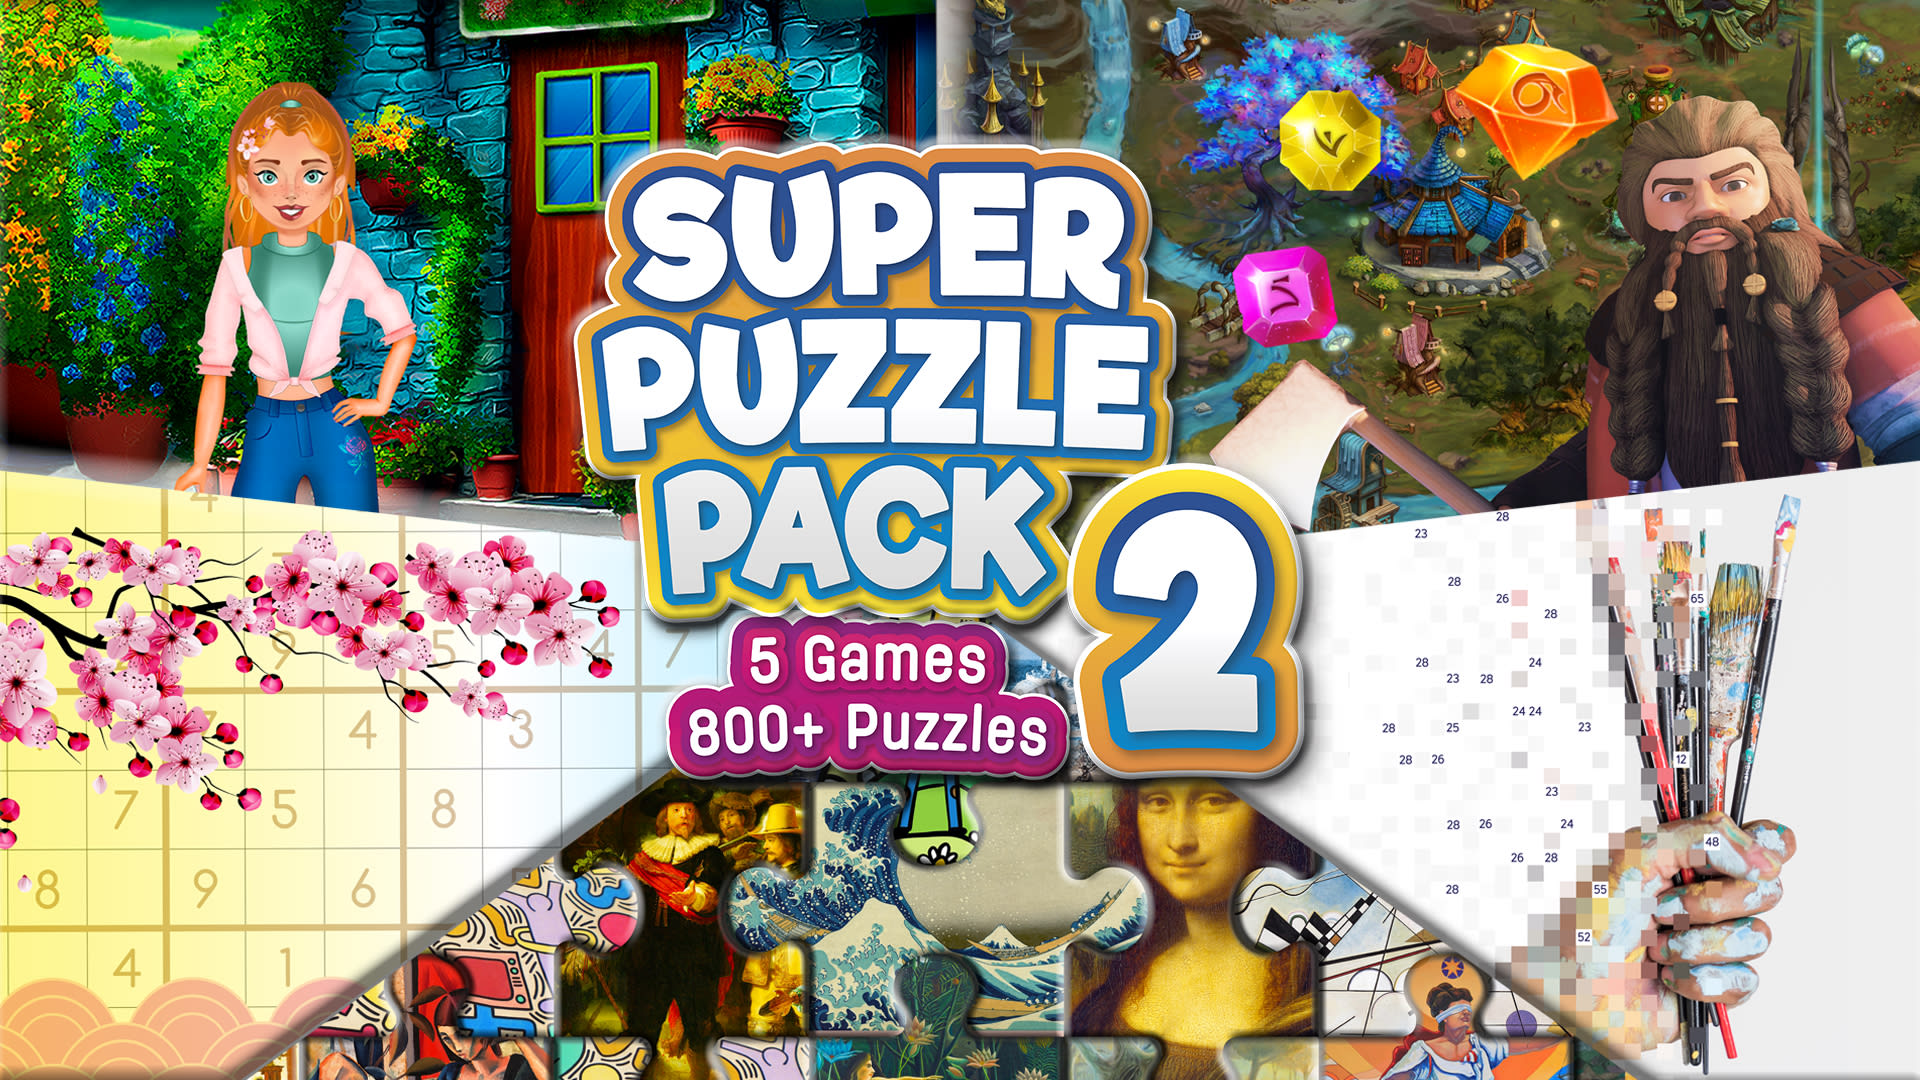 Super Puzzle Pack 2